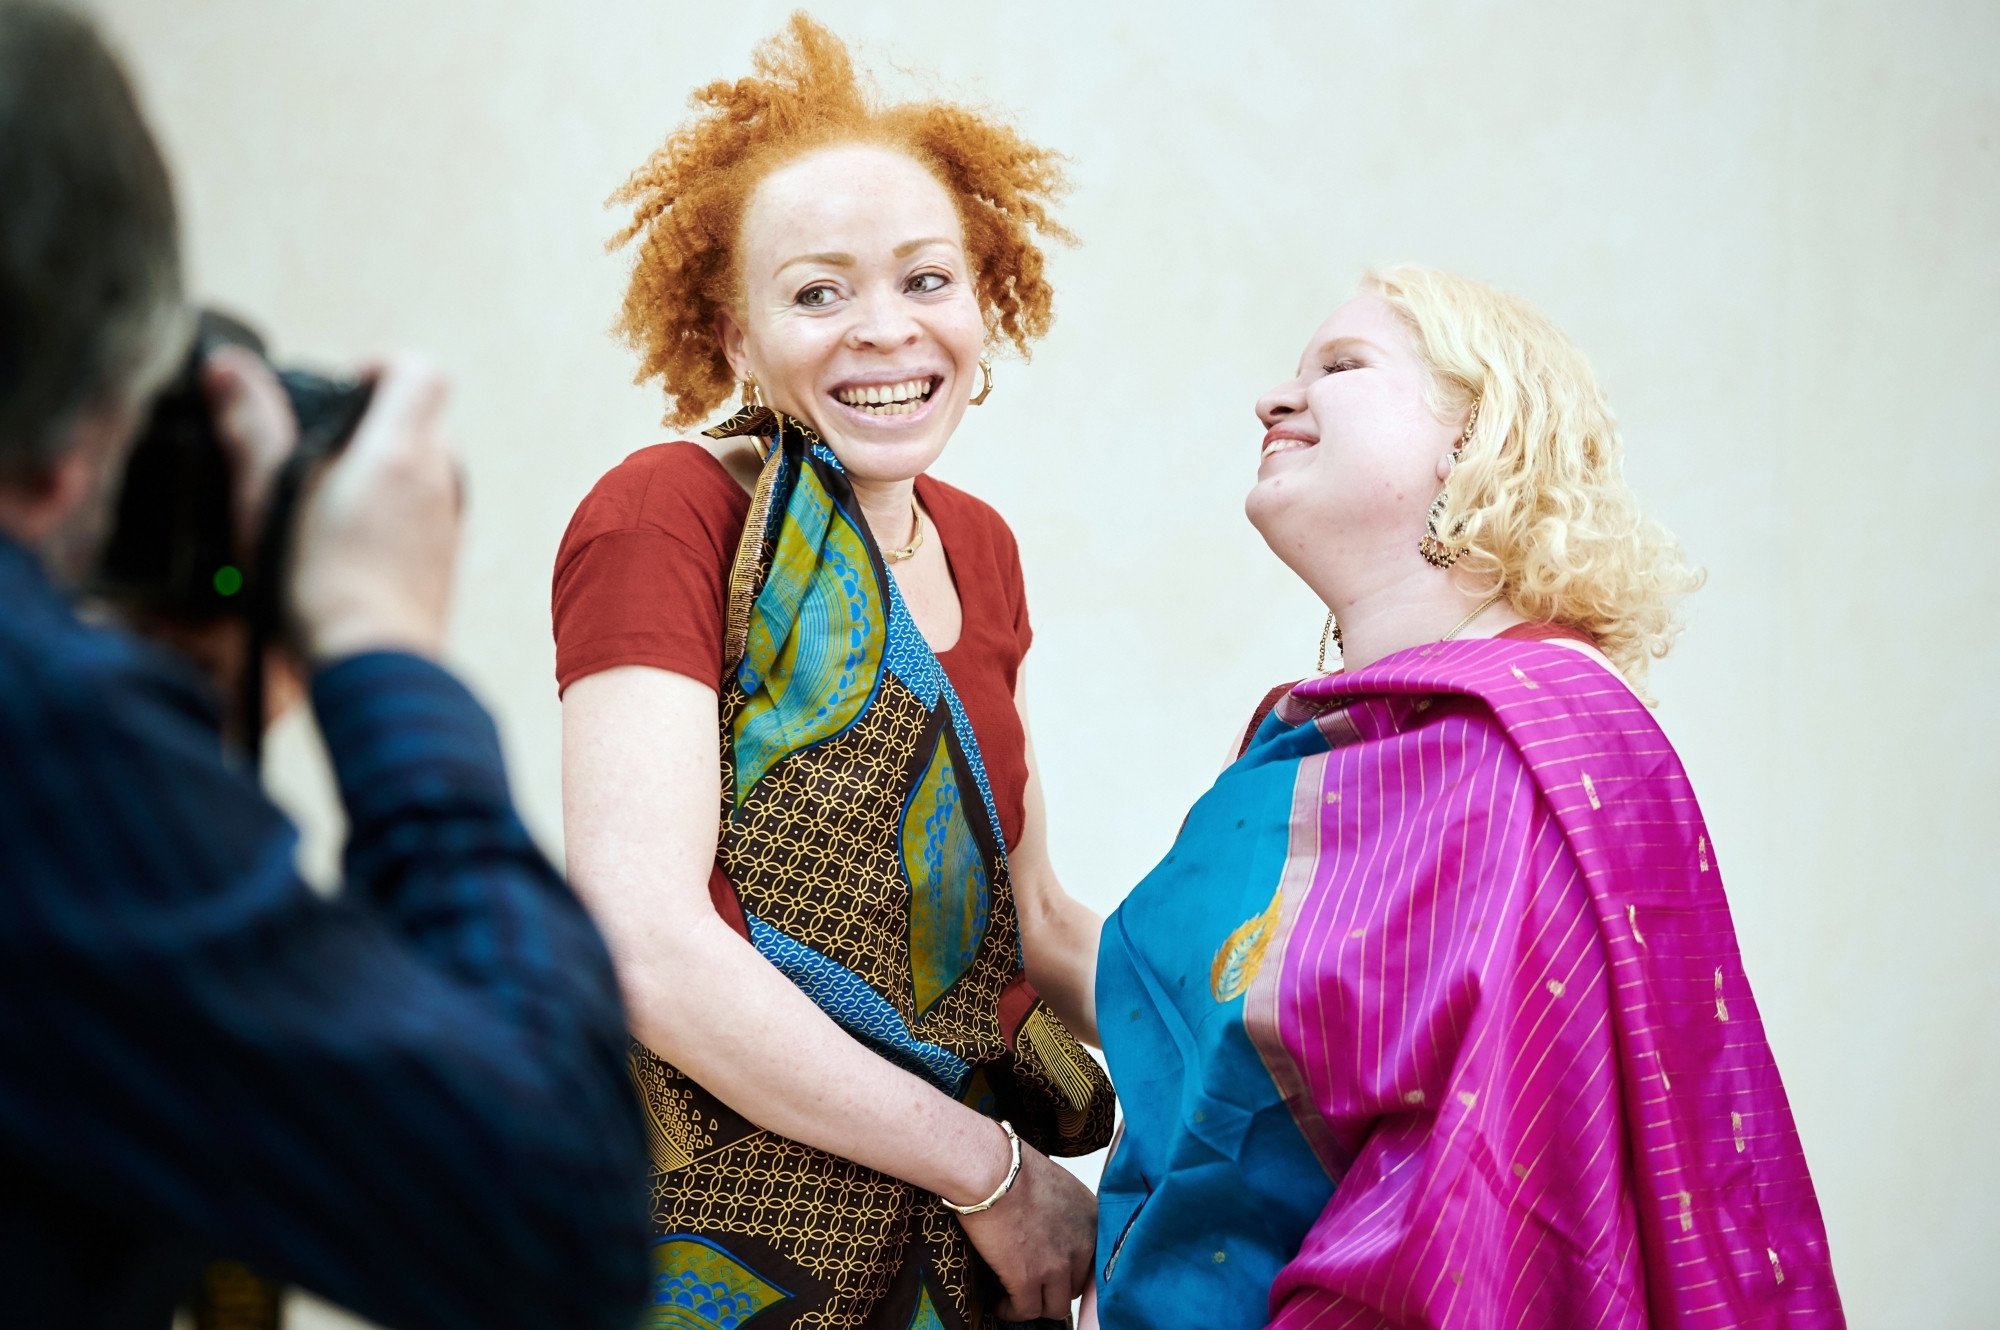 Le photographe neuchâtelois Pierre-William Henry a réalisé un shooting photo de femmes albinos. Ici Nathalie Cathy Muco, originaire du Burundi, et Claire Vannay, née en Inde.